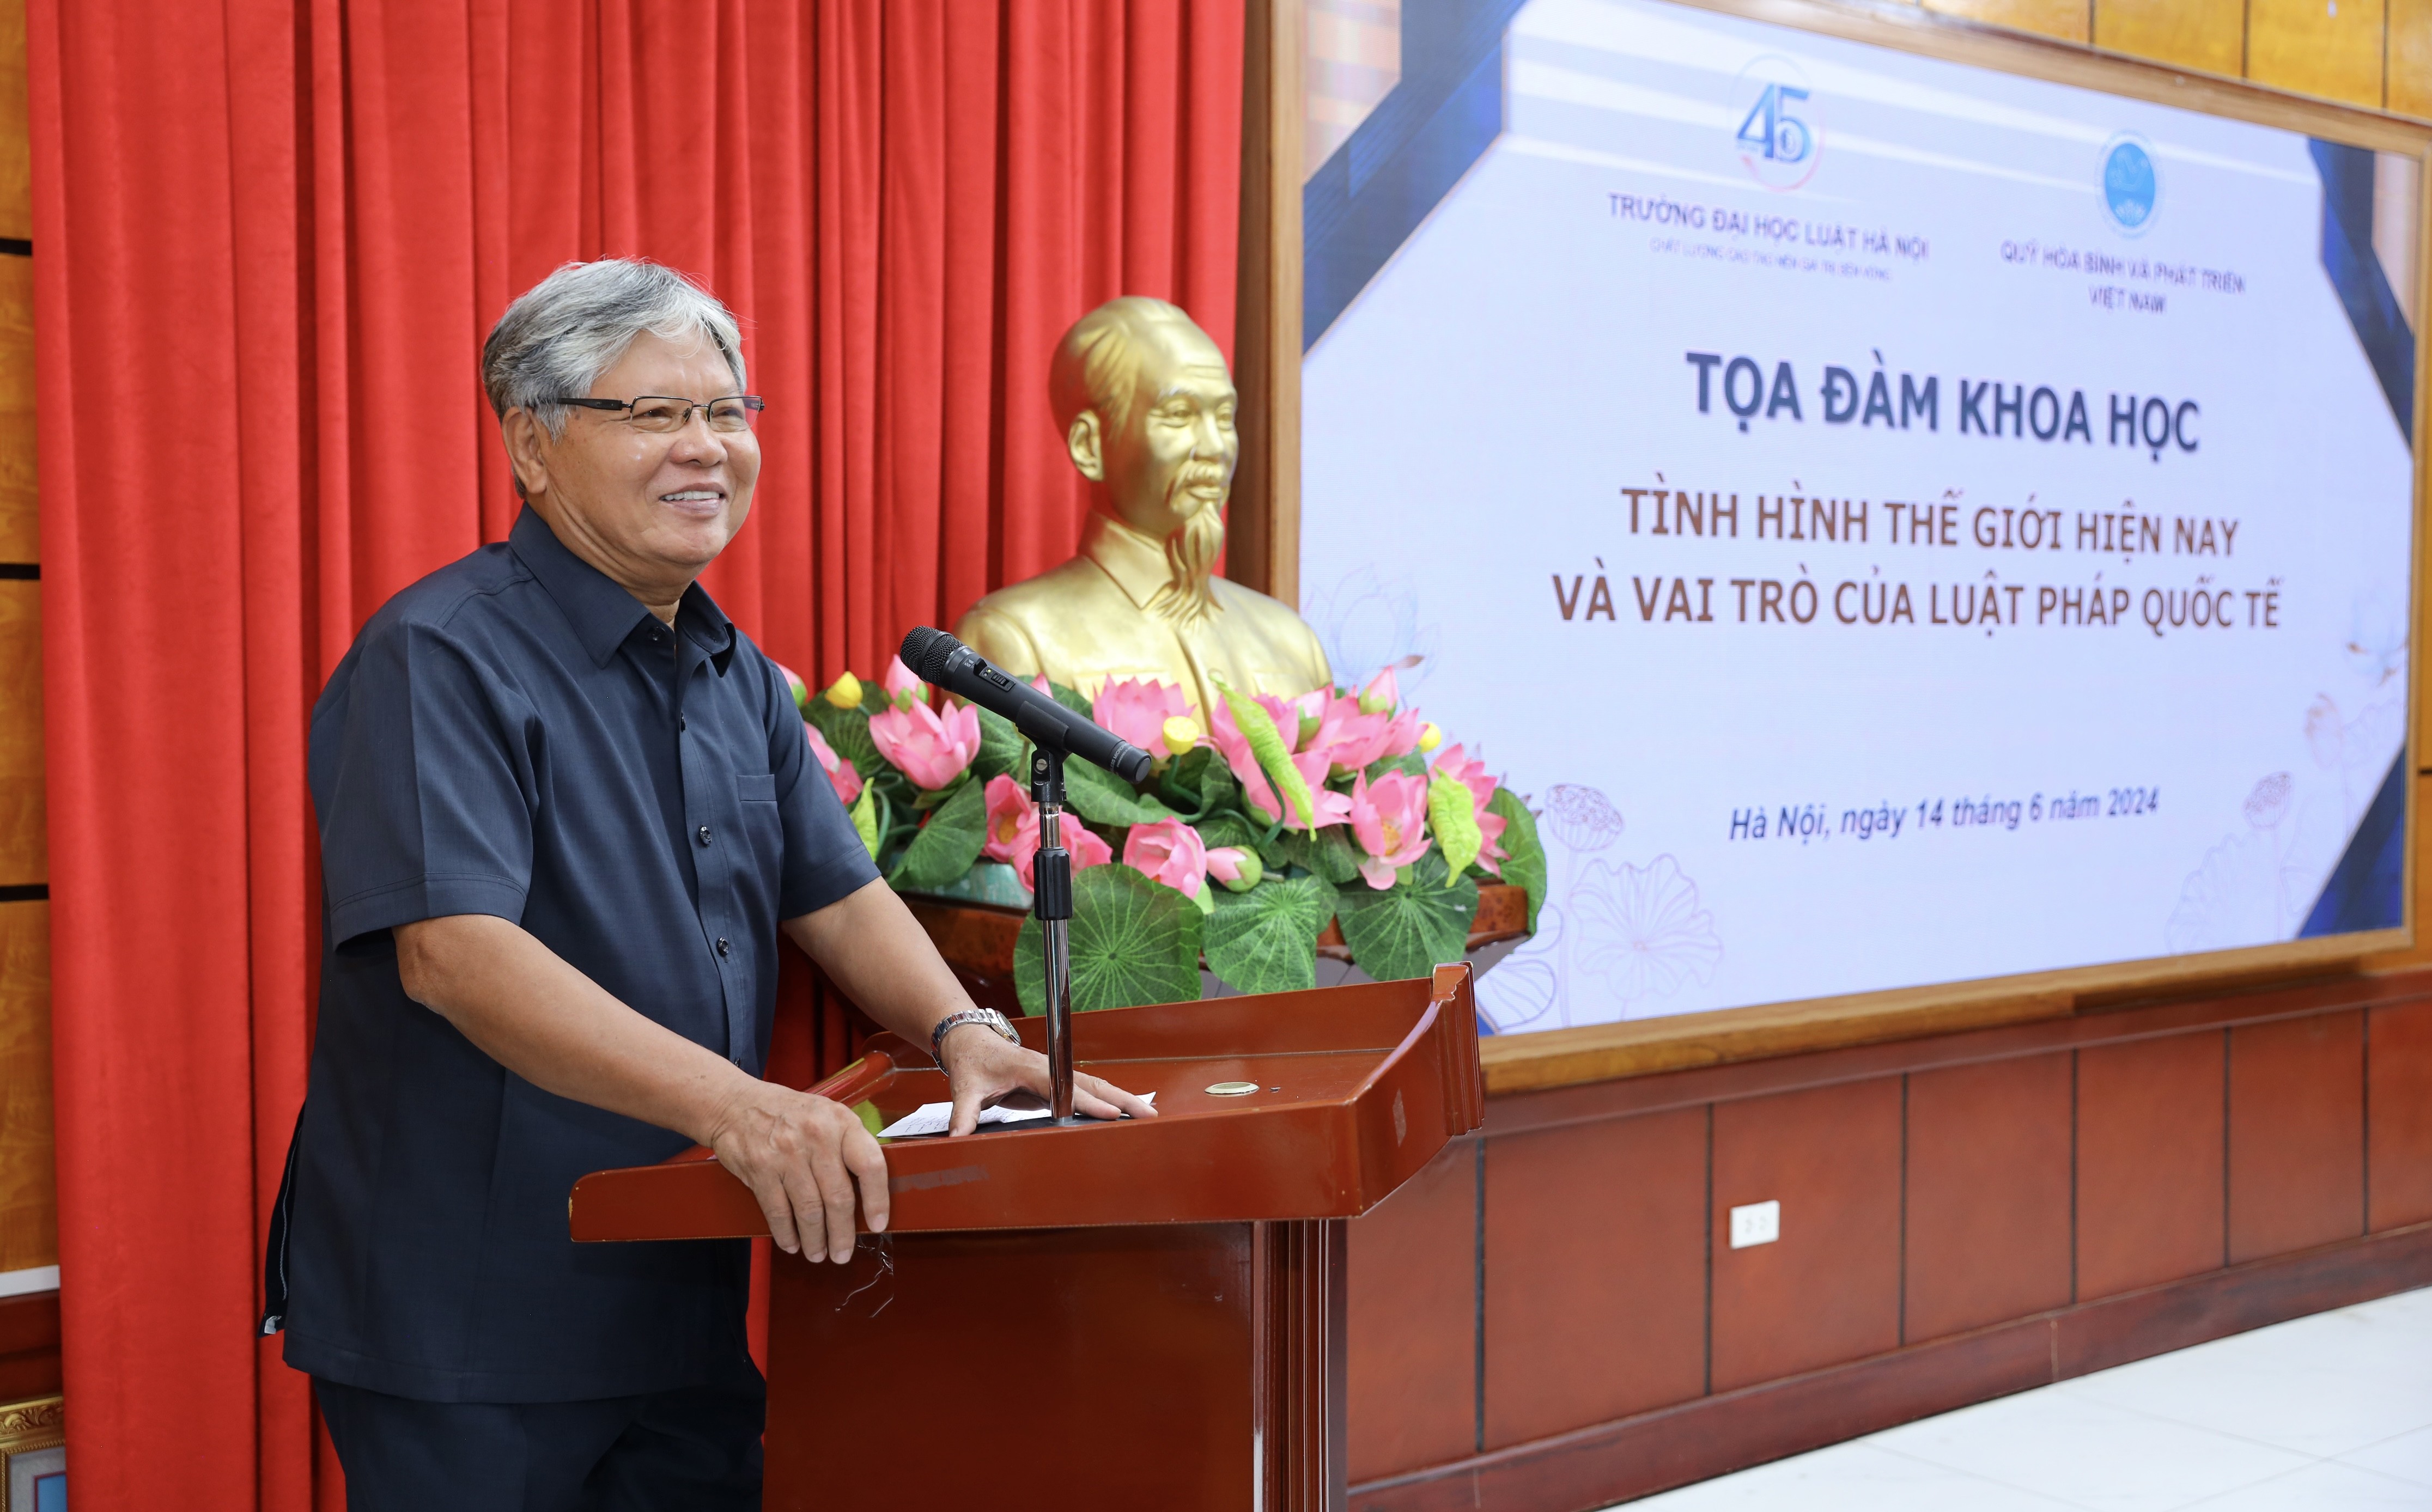 Vai trò của luật pháp quốc tế và nâng tầm vị thế Việt Nam trong xây dựng luật quốc tế